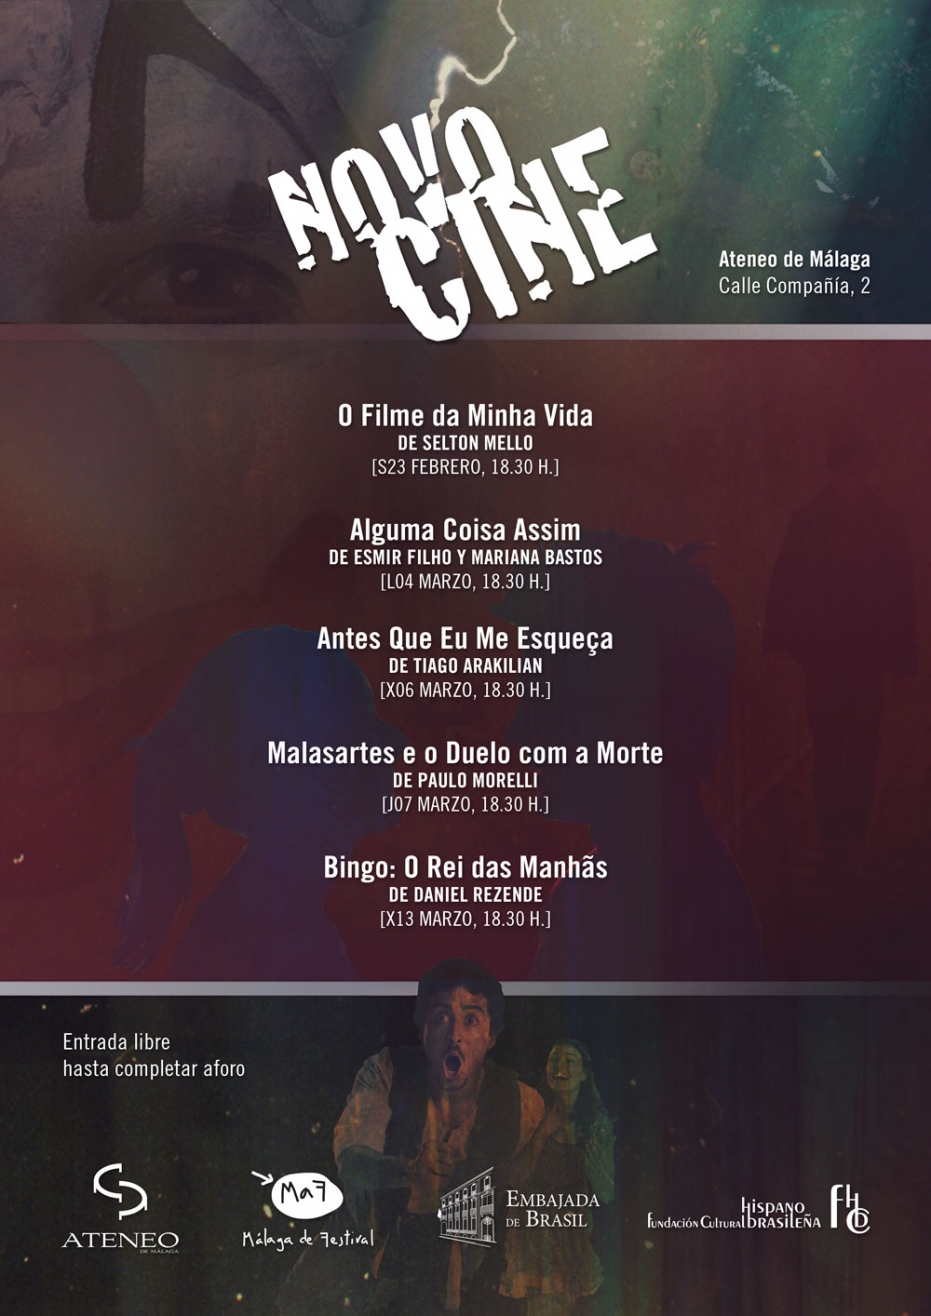 Cineclub Croma especial MaF. Sesión inaugural del II Ciclo de Cine Novocine: proyección de O Filme da Minha Vida, de Selton Mello. En colaboración con la Embajada de Brasil y la Fundación Cultural Hispano Brasileña